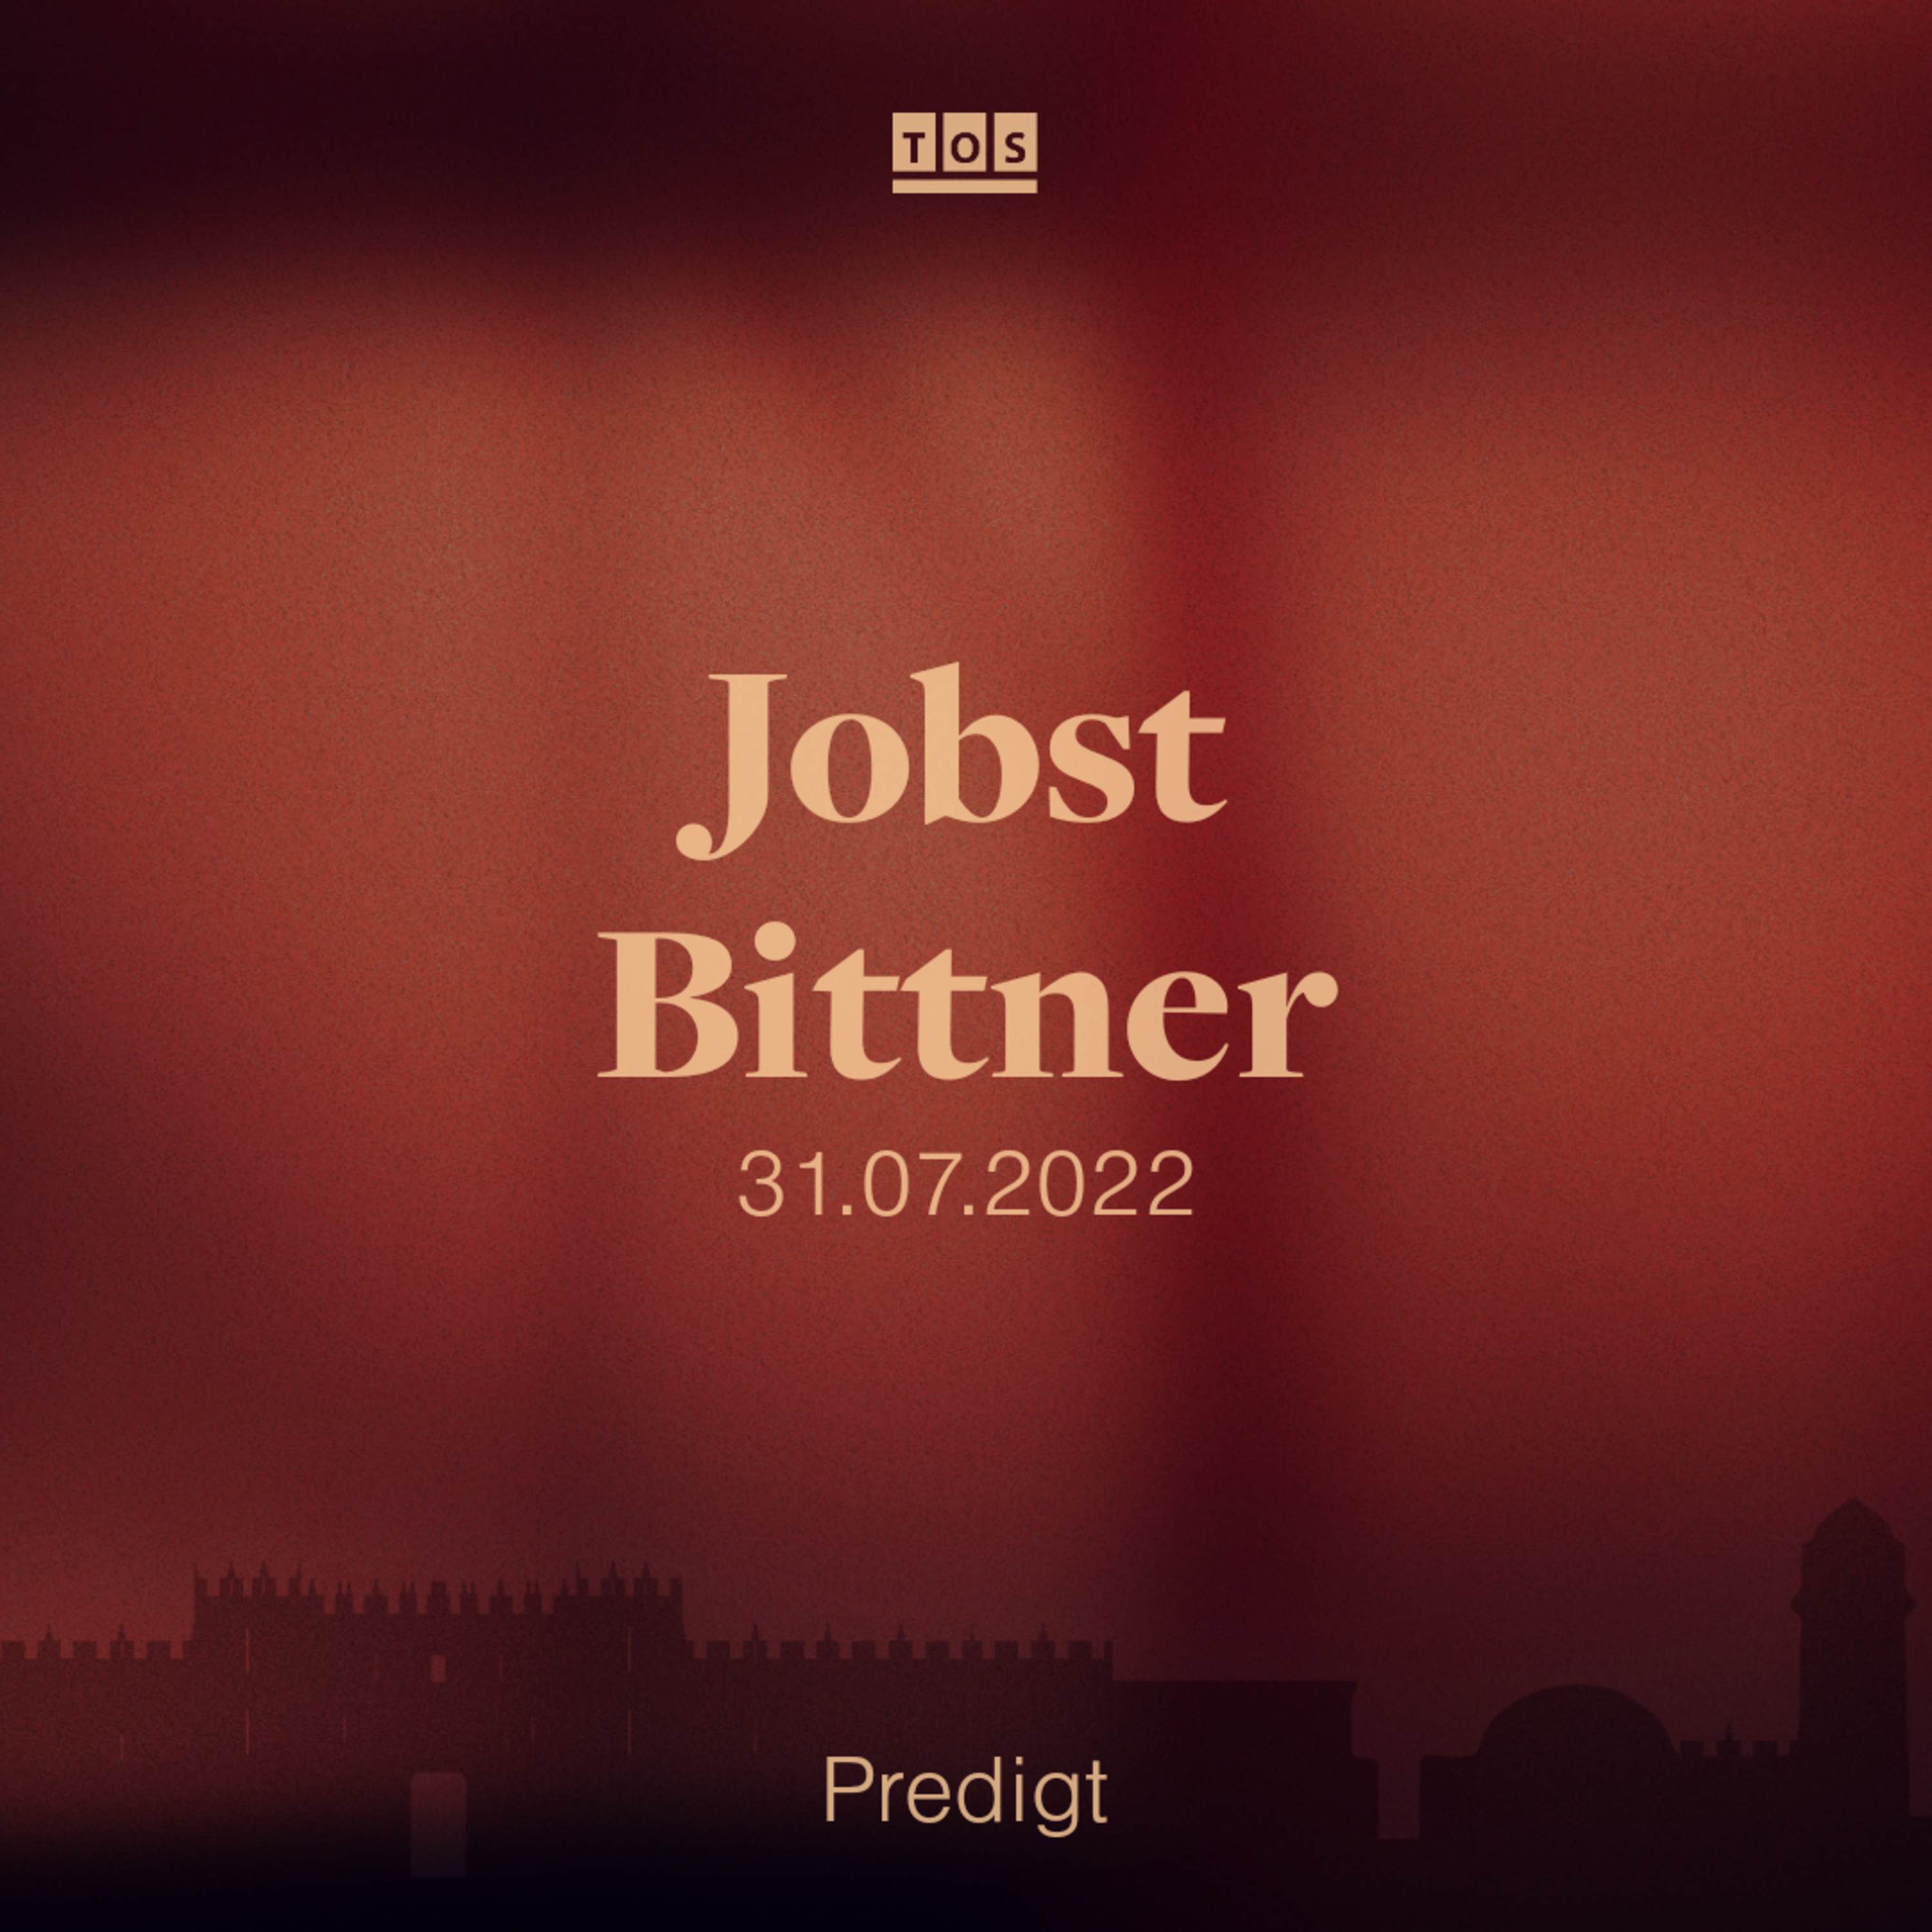 Jobst Bittner - 31.07.2022 hero artwork